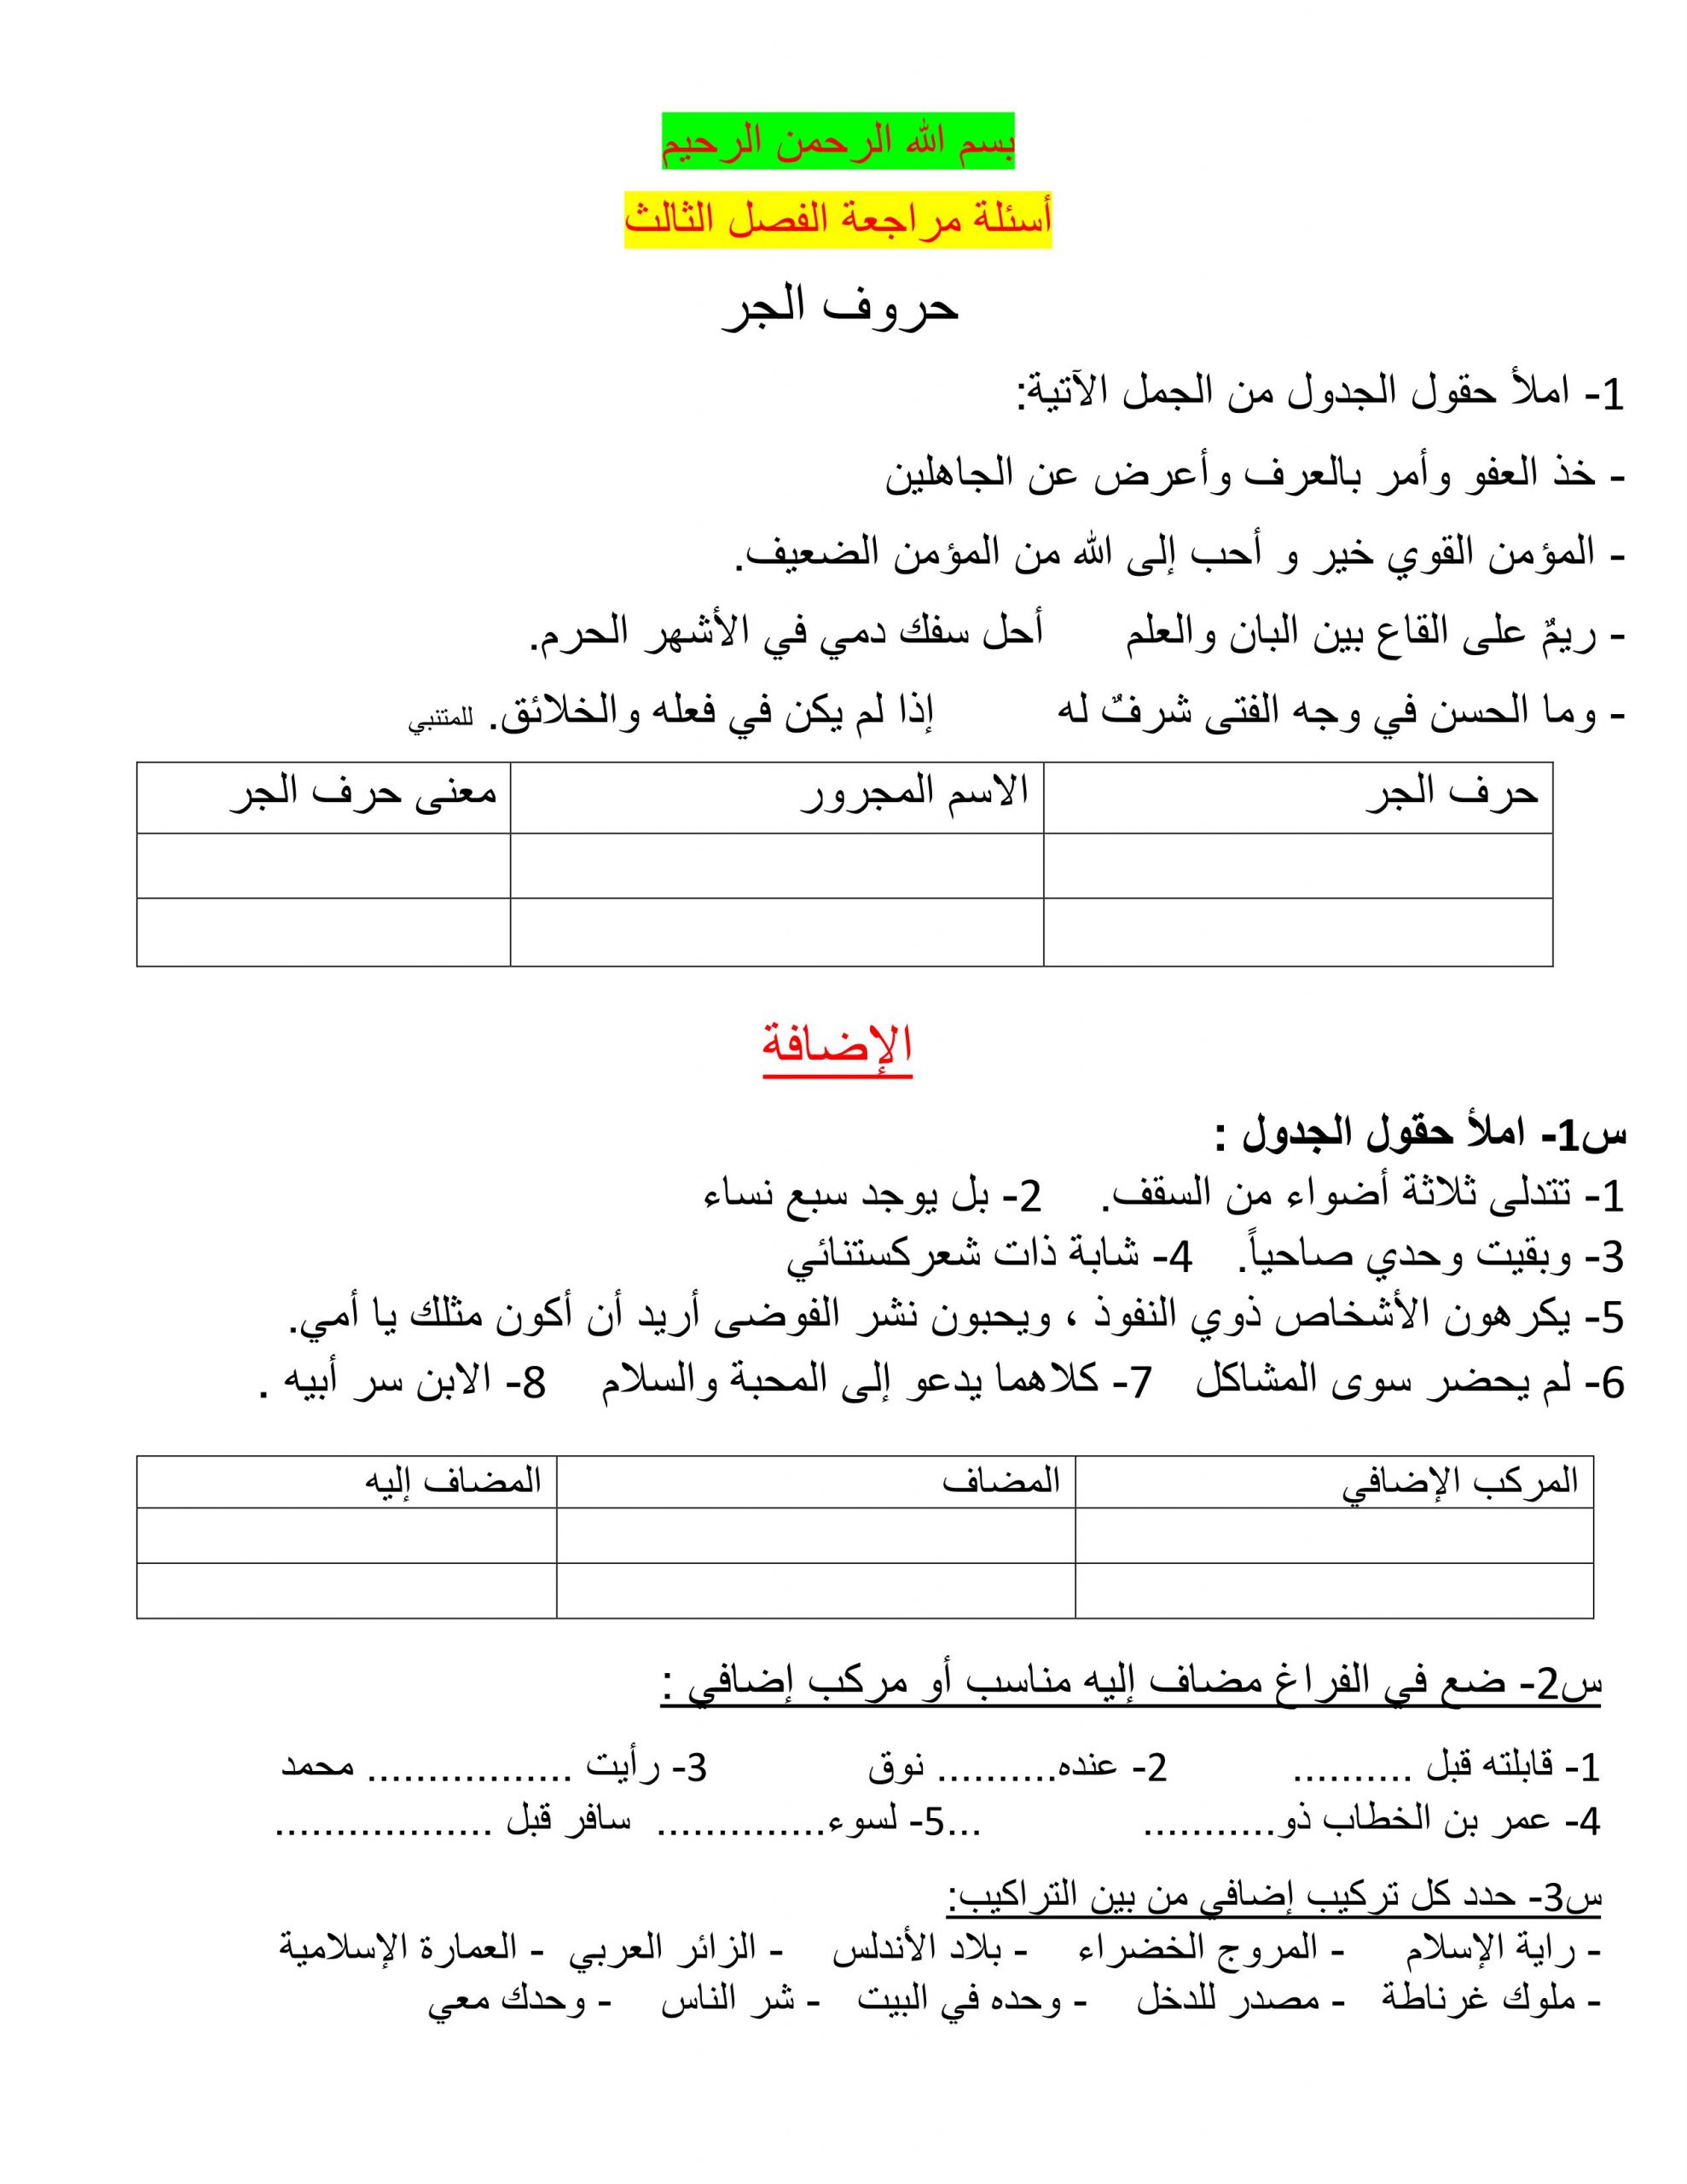 أسئلة مراجعة الفصل الدراسي الثالث الصف الثاني عشر مادة اللغة العربية 